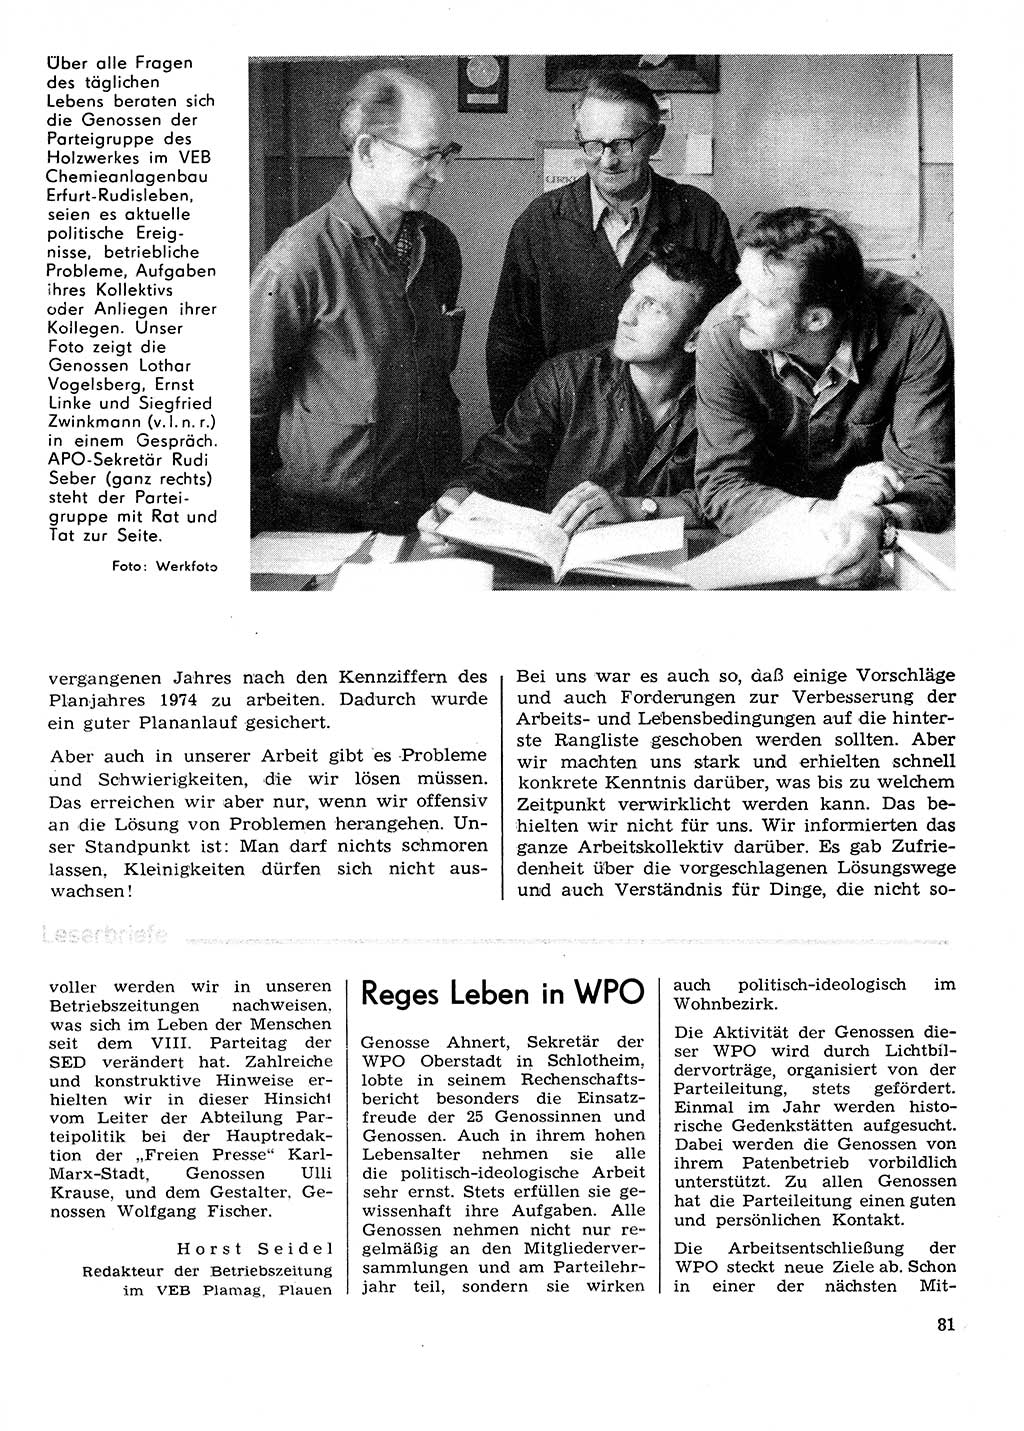 Neuer Weg (NW), Organ des Zentralkomitees (ZK) der SED (Sozialistische Einheitspartei Deutschlands) für Fragen des Parteilebens, 29. Jahrgang [Deutsche Demokratische Republik (DDR)] 1974, Seite 81 (NW ZK SED DDR 1974, S. 81)